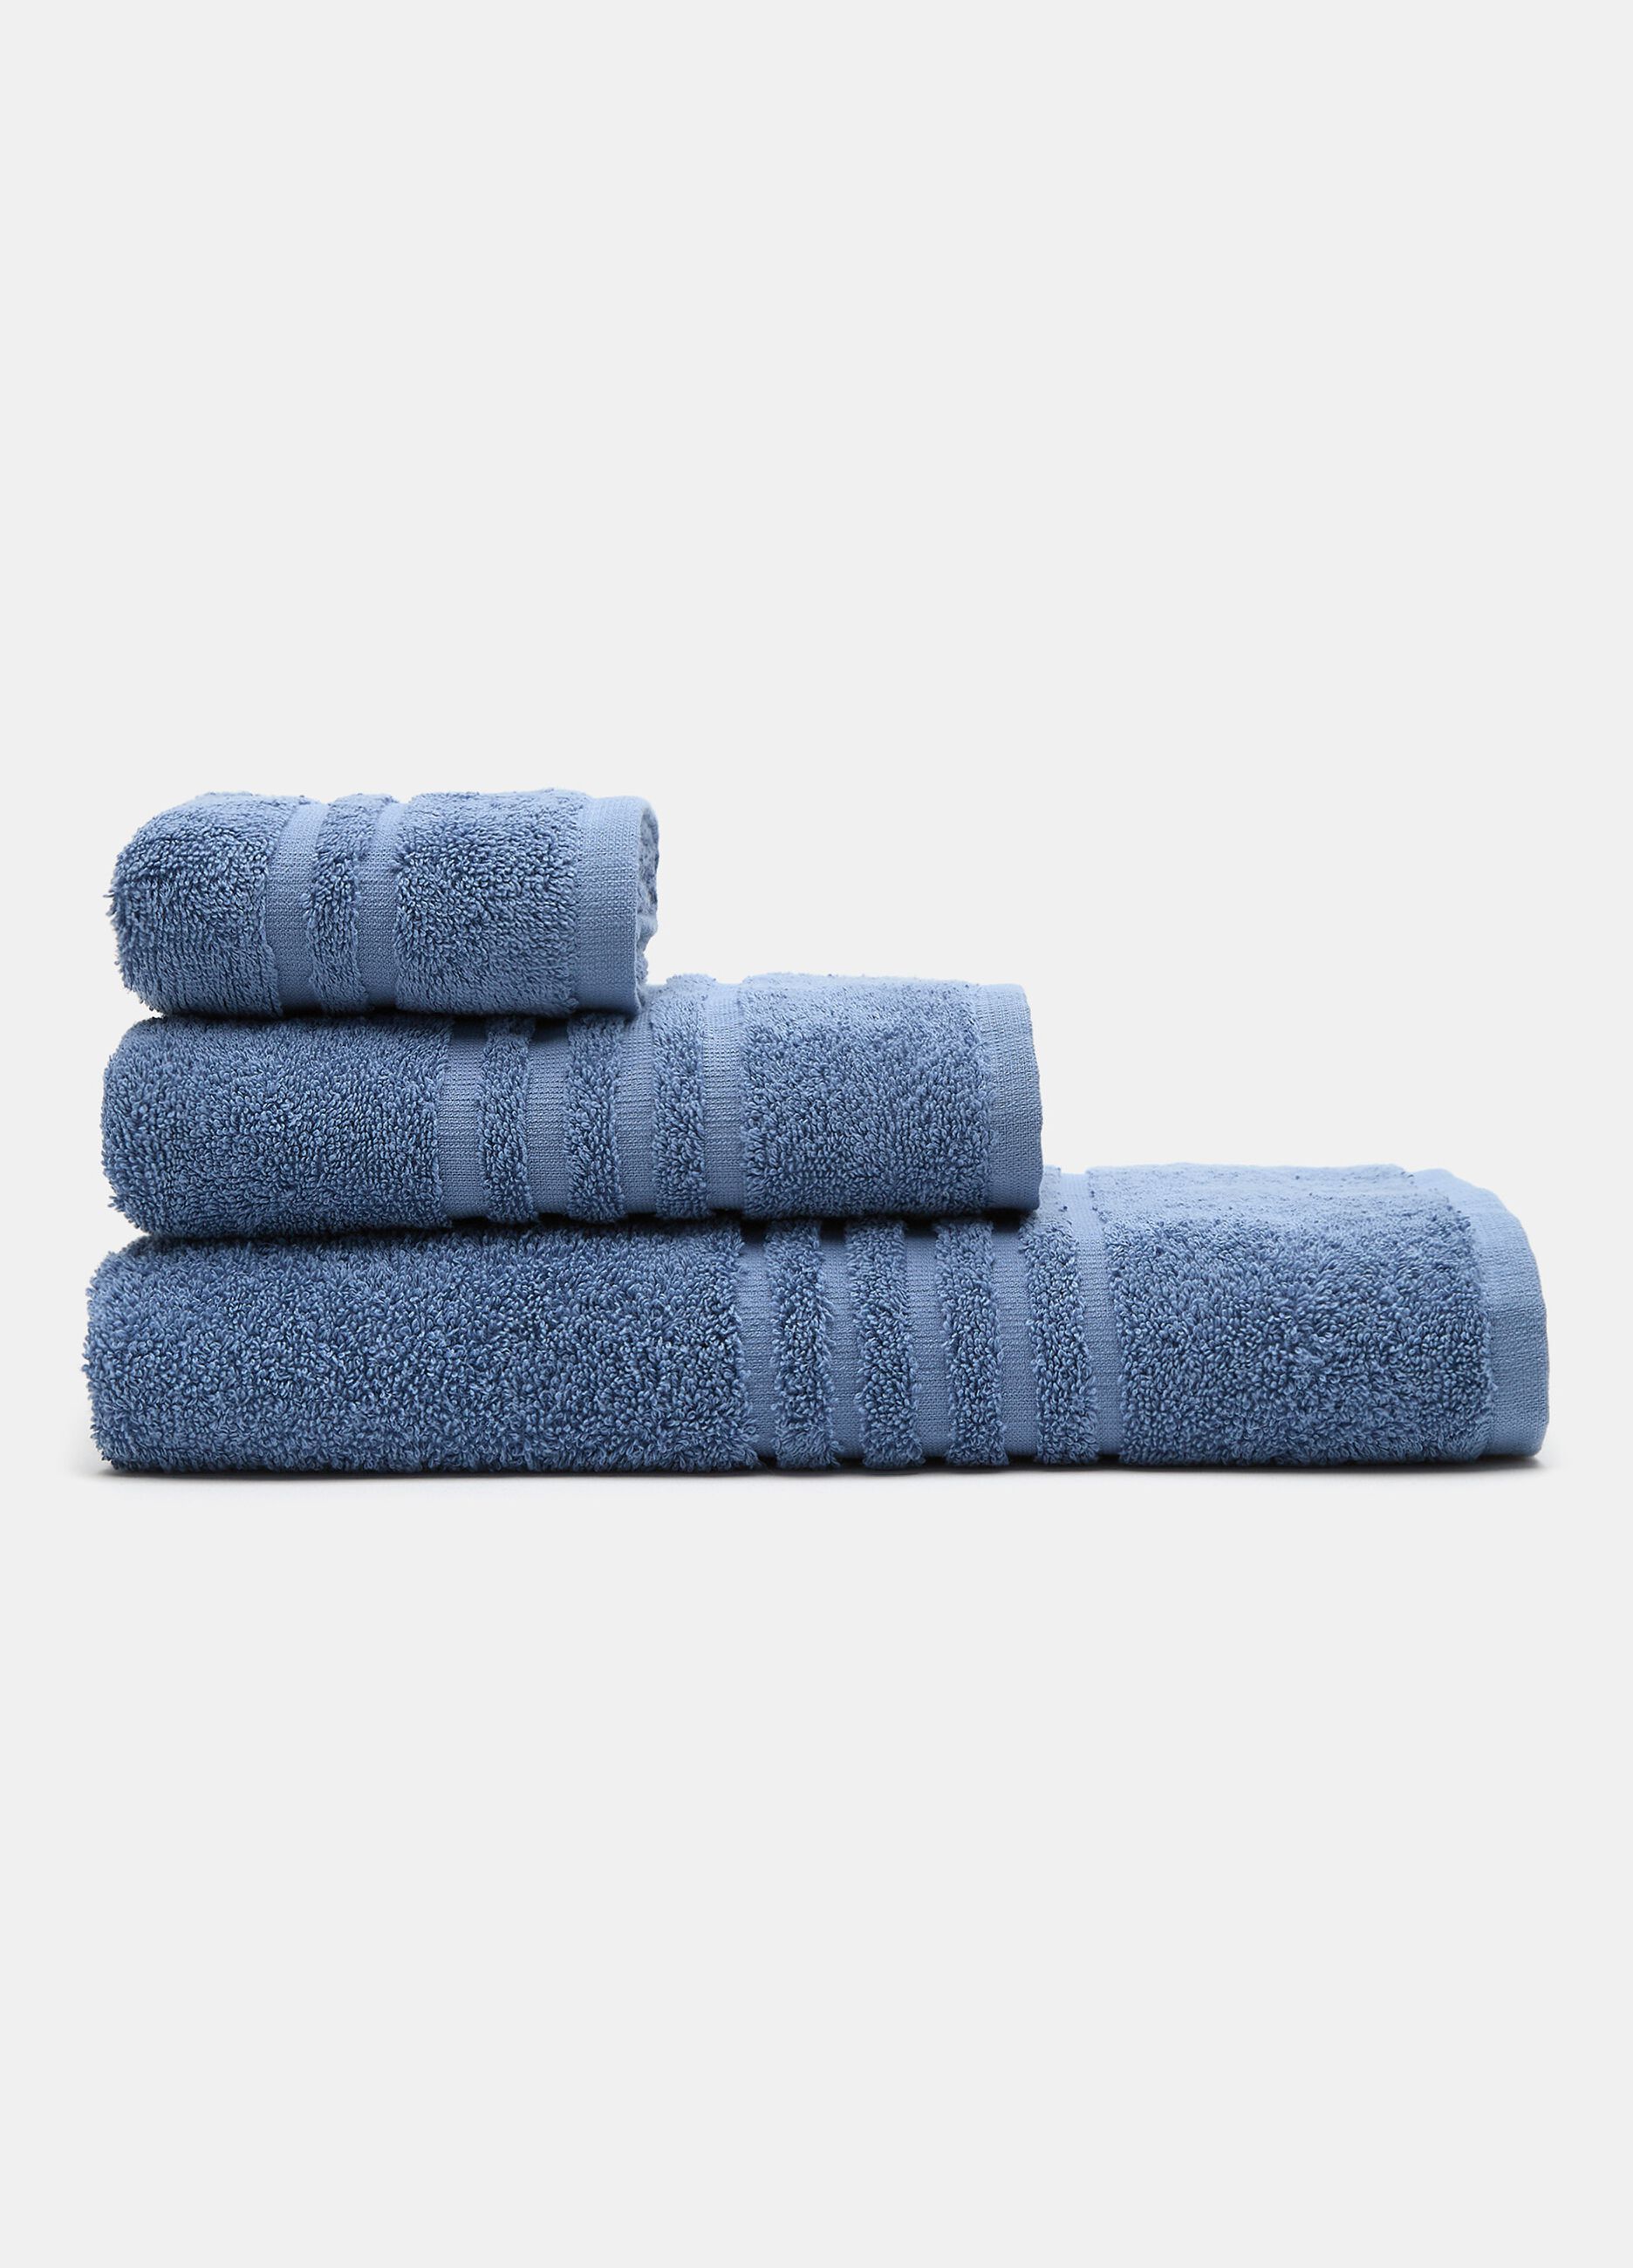 100% cotton guest towel